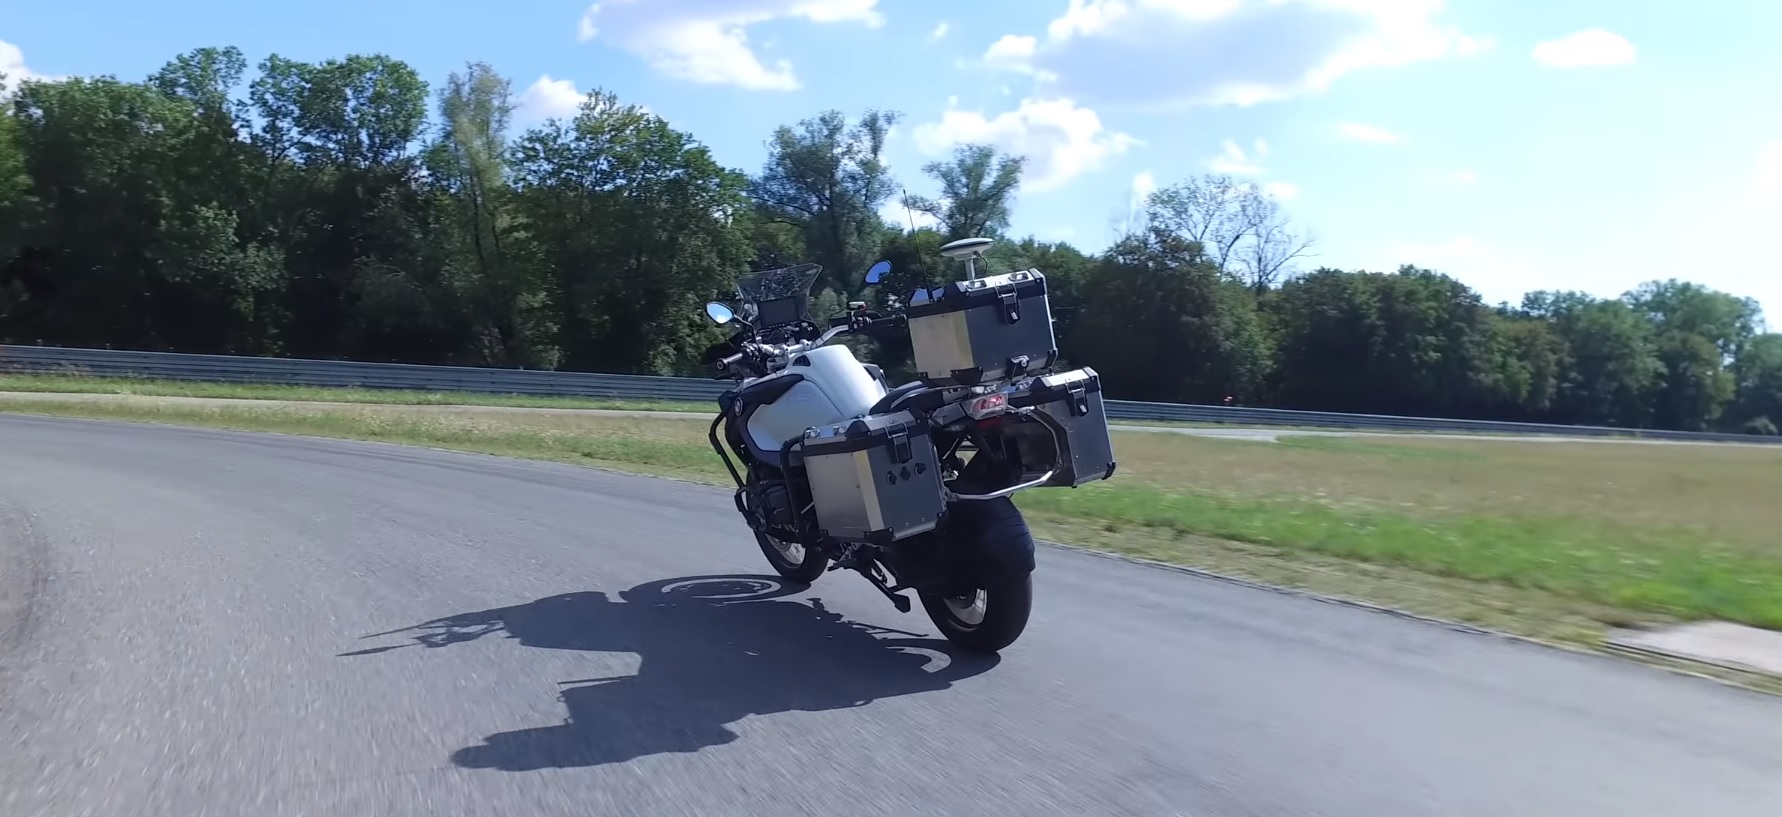 W BMW stworzyli bezzałogowy motocykl do testowania nowych systemów bezpieczeństwa